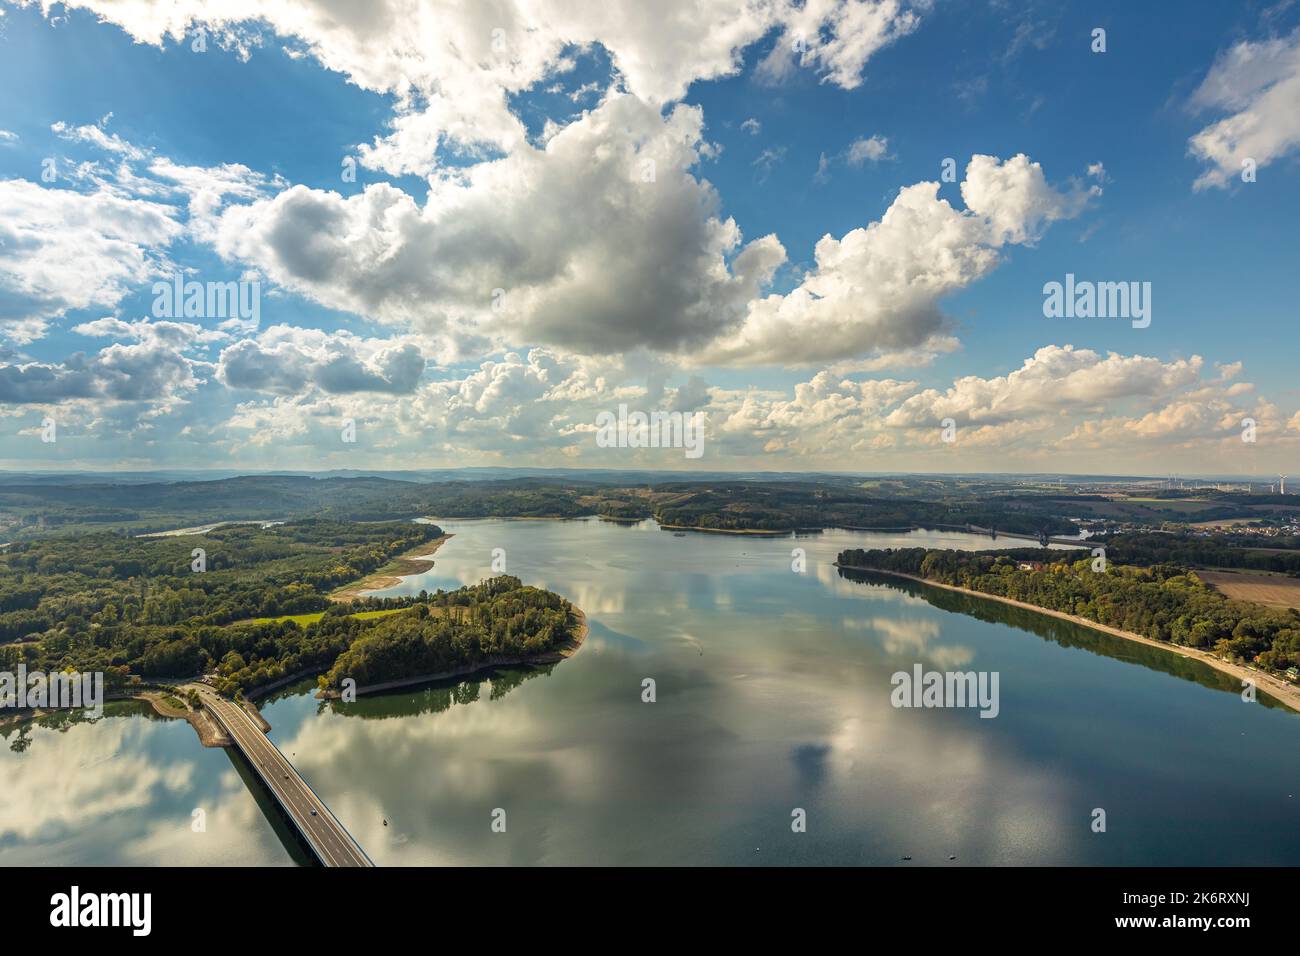 Vue aérienne, pont Delecker avec vue lointaine et ciel bleu avec nuages, reflet des nuages dans le lac Möhne, Delecke, lac Möhne, Sauerland, Nord RHI Banque D'Images